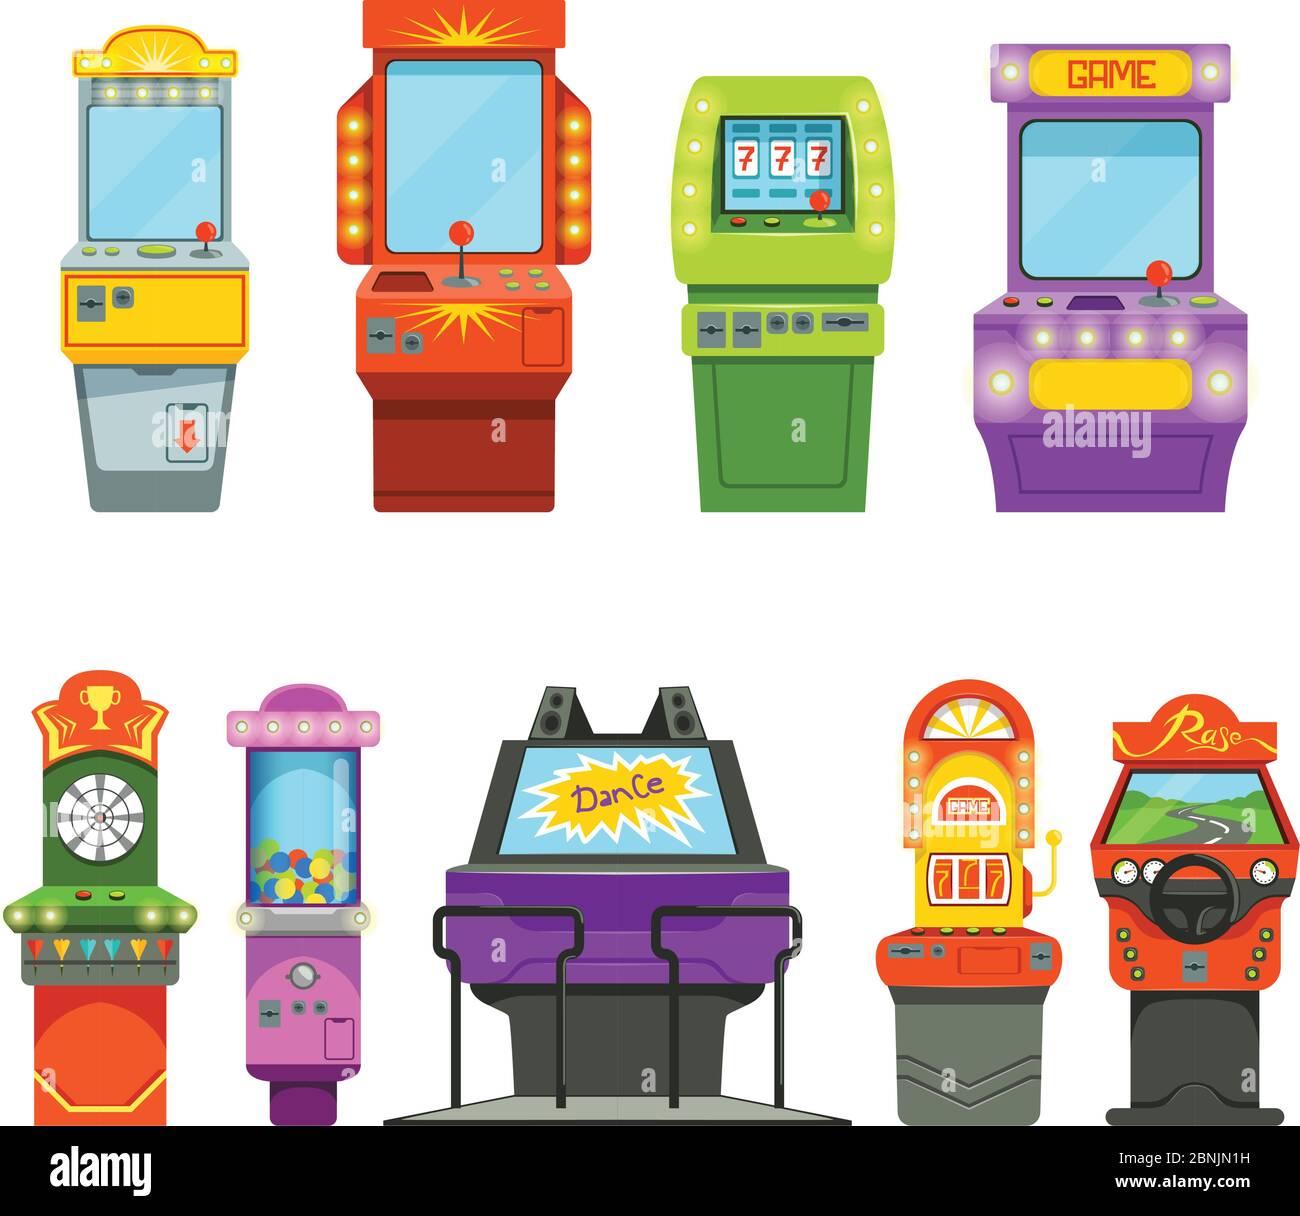 Vektor farbige Illustrationen von Spielmaschinen. Fahrsimulator und verschiedene Arcade-Spiele im Vergnügungspark Stock Vektor